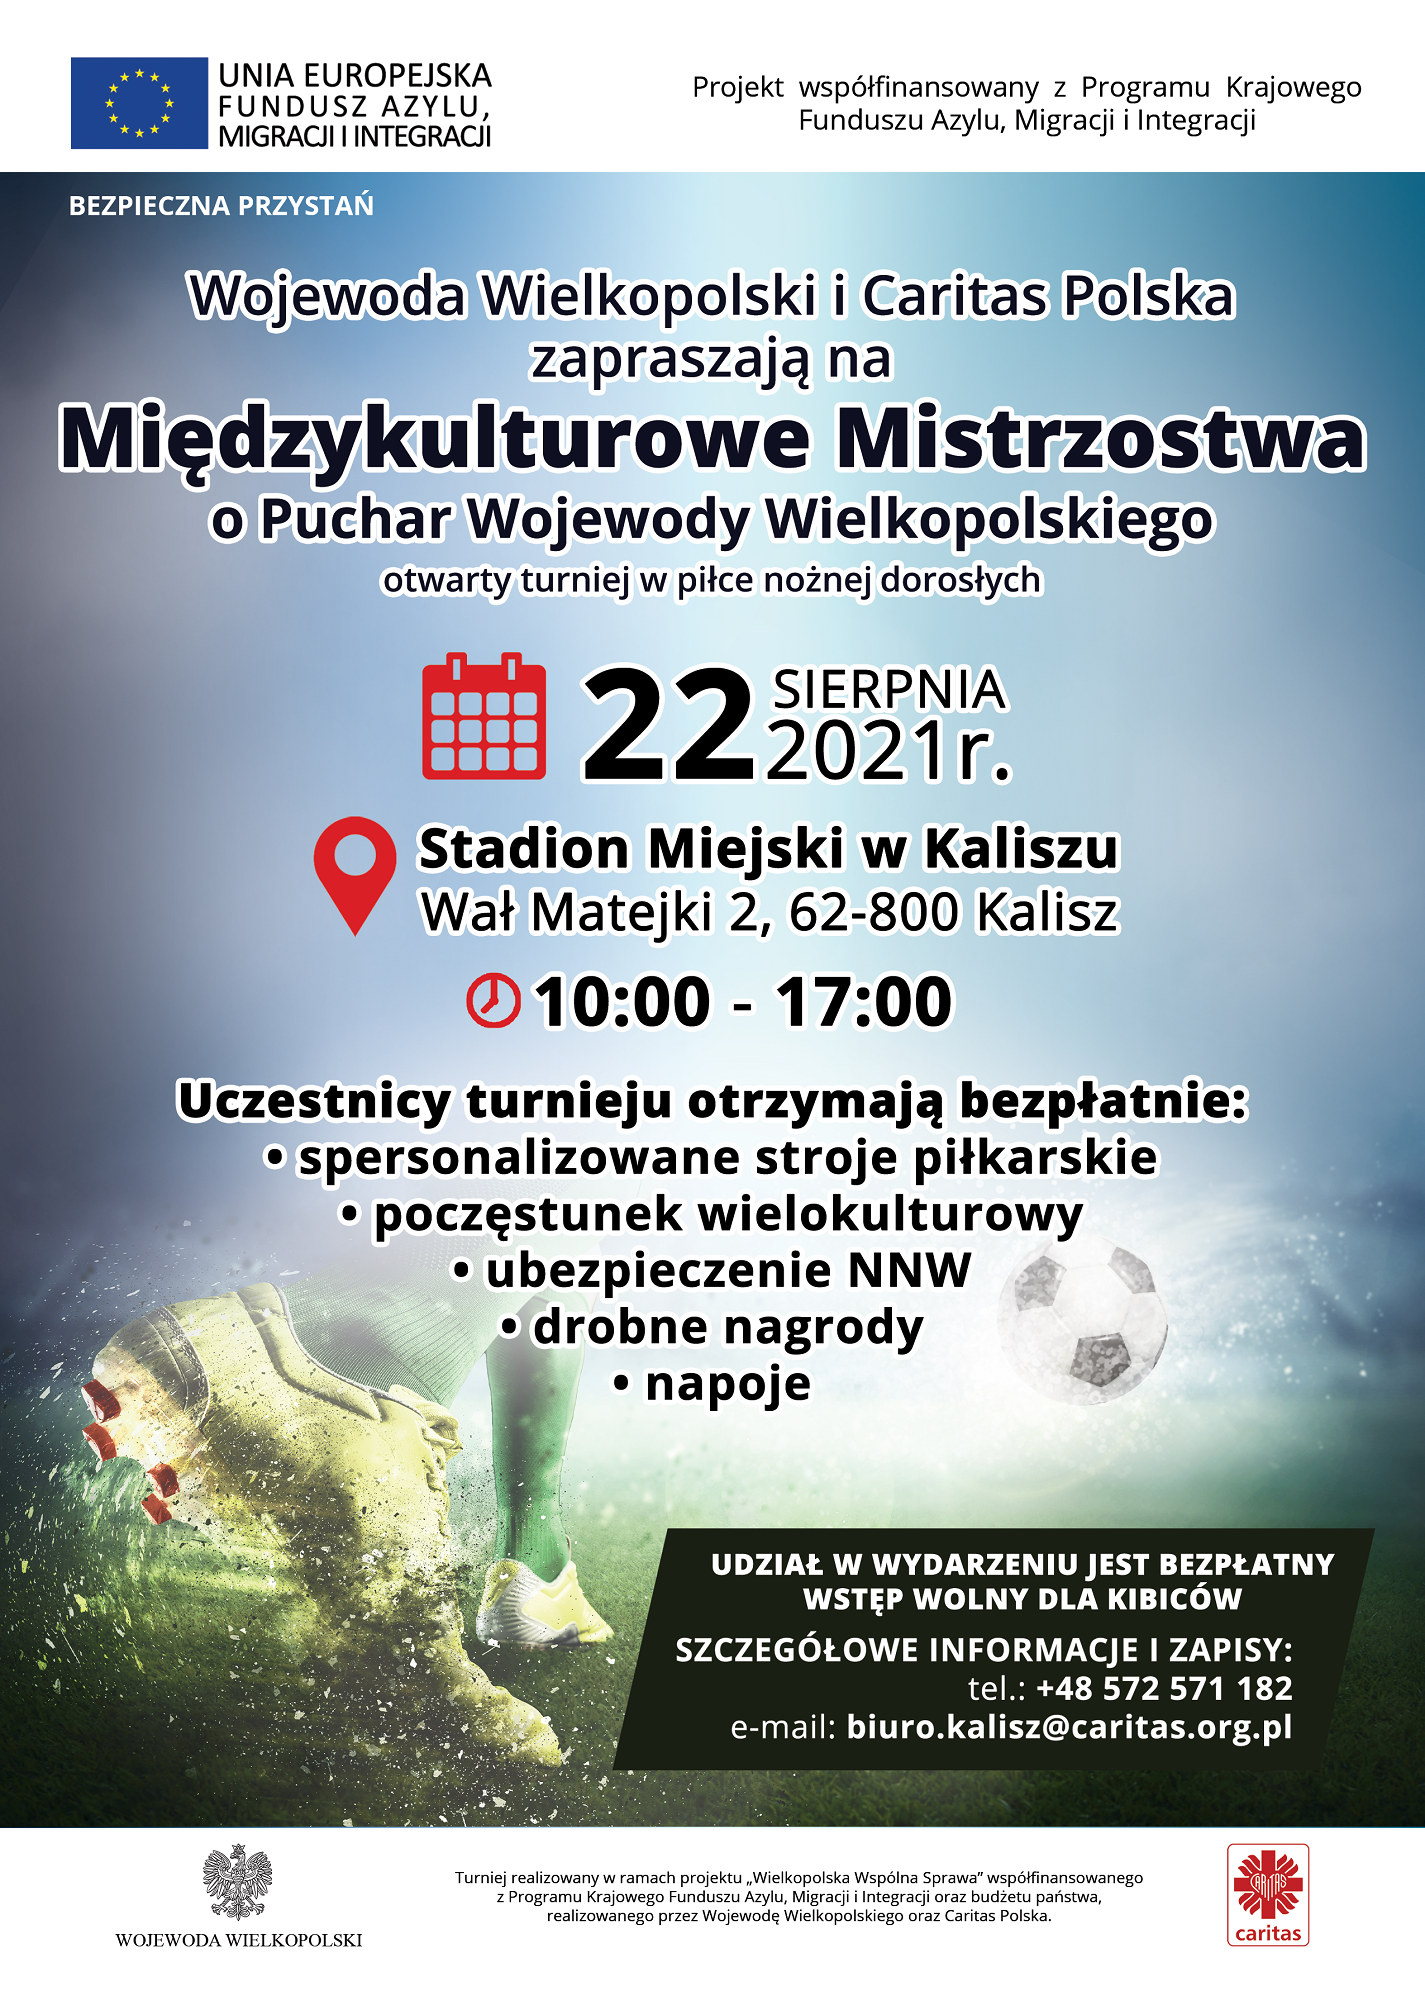 zapraszamy do udziału w Międzykulturowych Mistrzostwach o Puchar Wojewody Wielkopolskiego (turnieju piłki nożnej), realizowanych w ramach projektu „Wielkopolska Wspólna Sprawa” współfinansowanego z Programu Krajowego Funduszu Azylu, Migracji i Integracji 